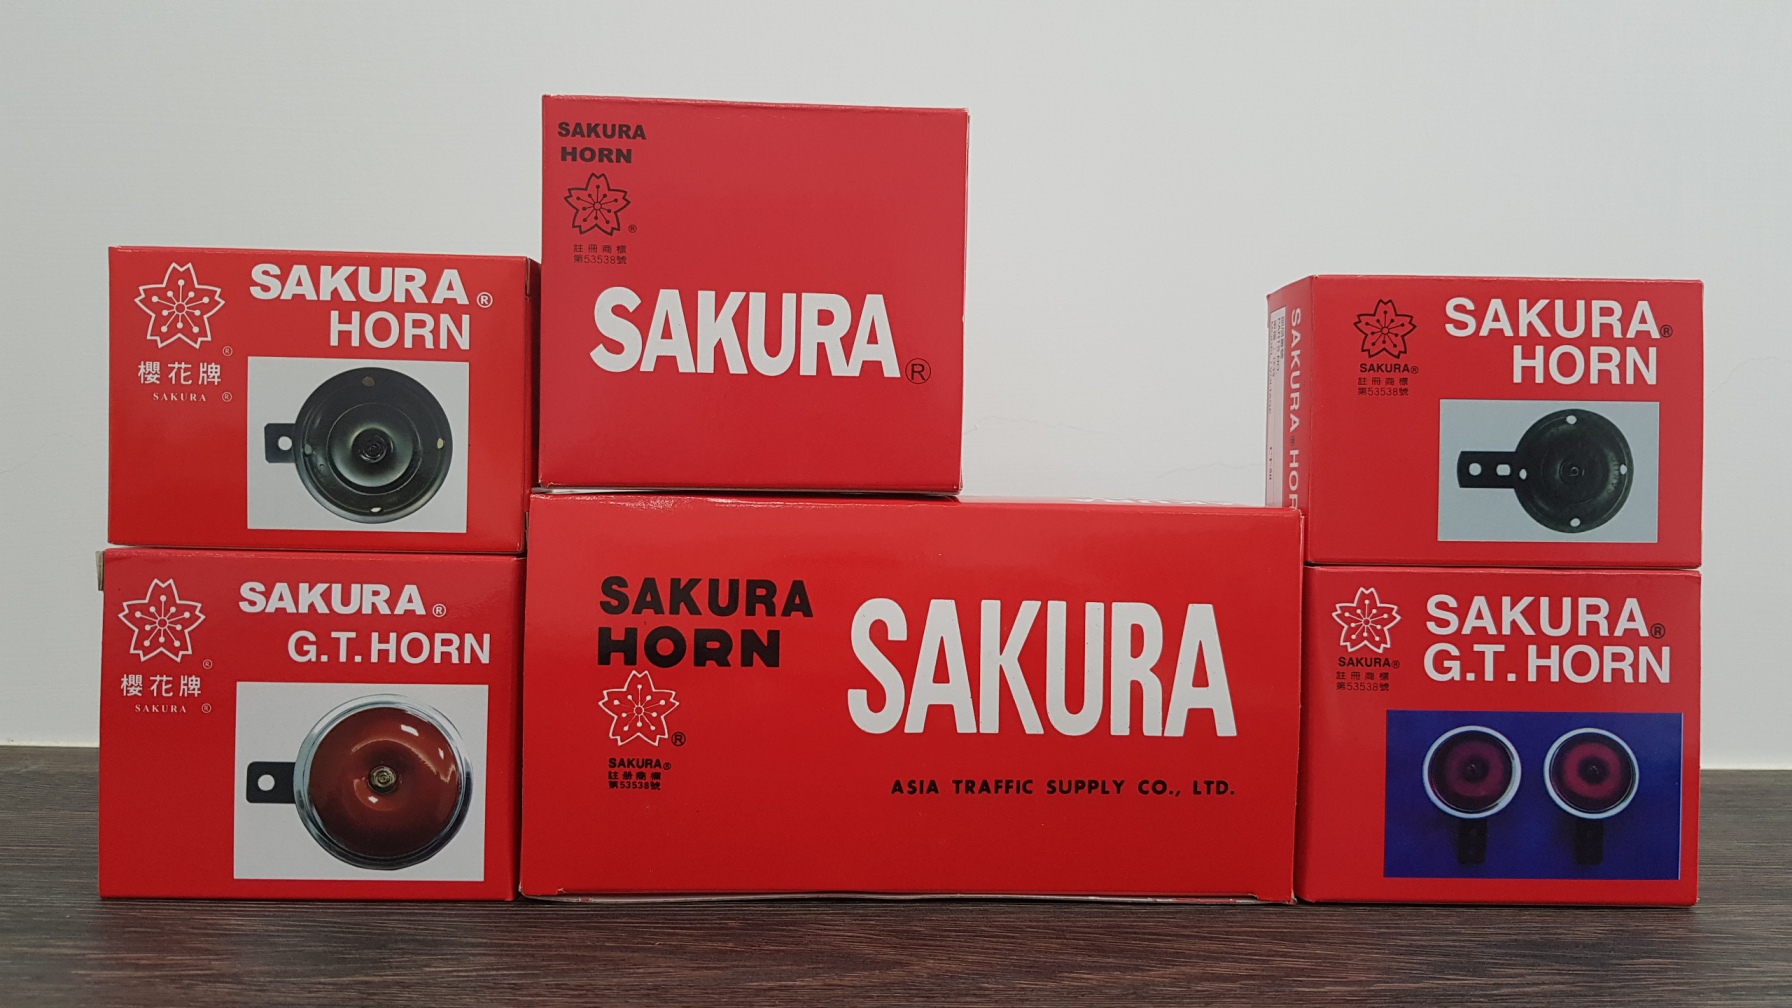 Veuillez reconnaître le paquet rouge SAKURA HORN.